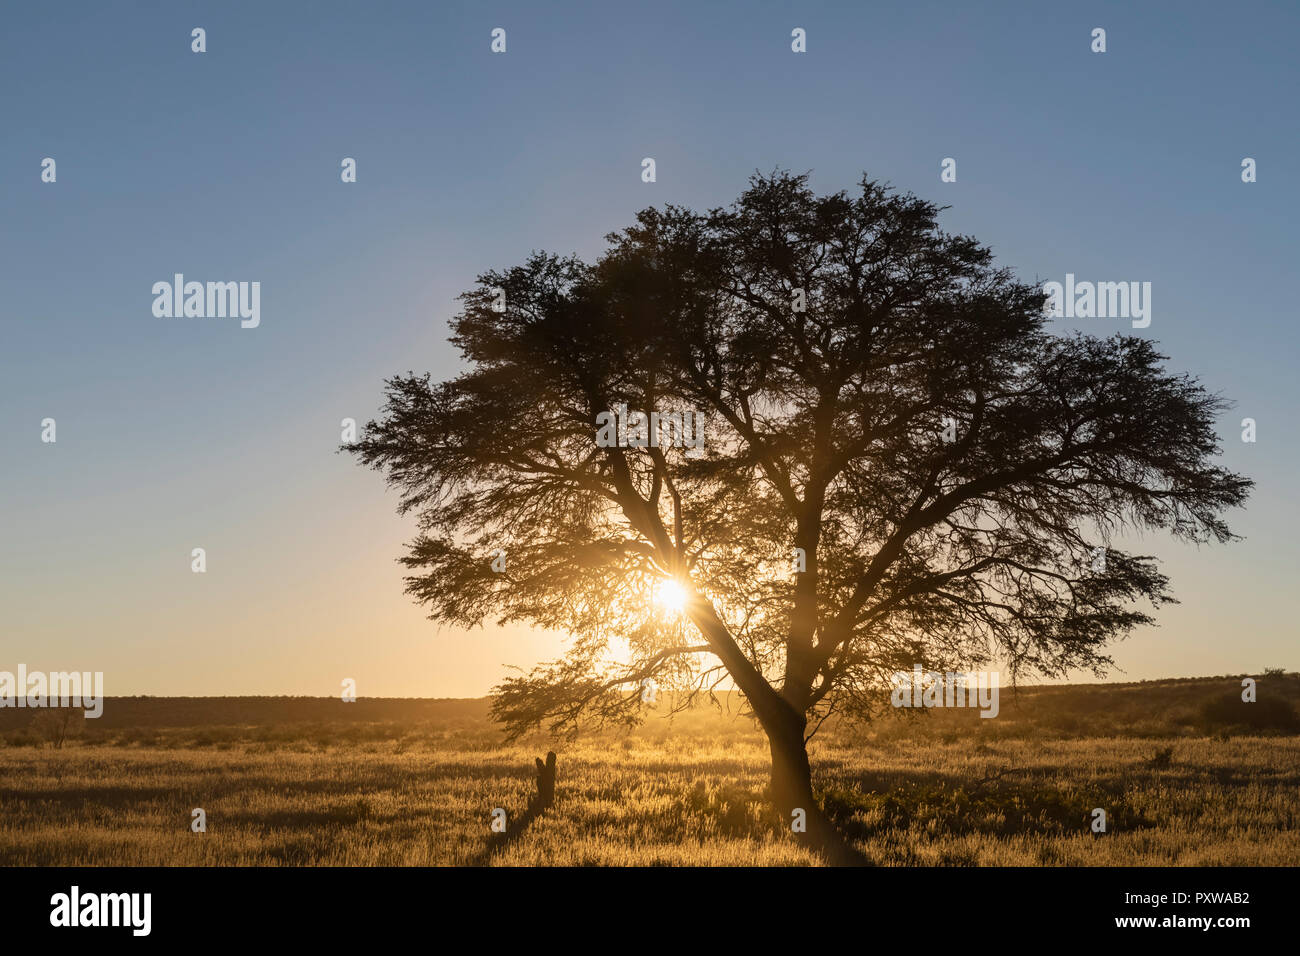 Le Botswana, Kgalagadi Transfrontier Park, Kalahari, camelthorn au lever du soleil Banque D'Images